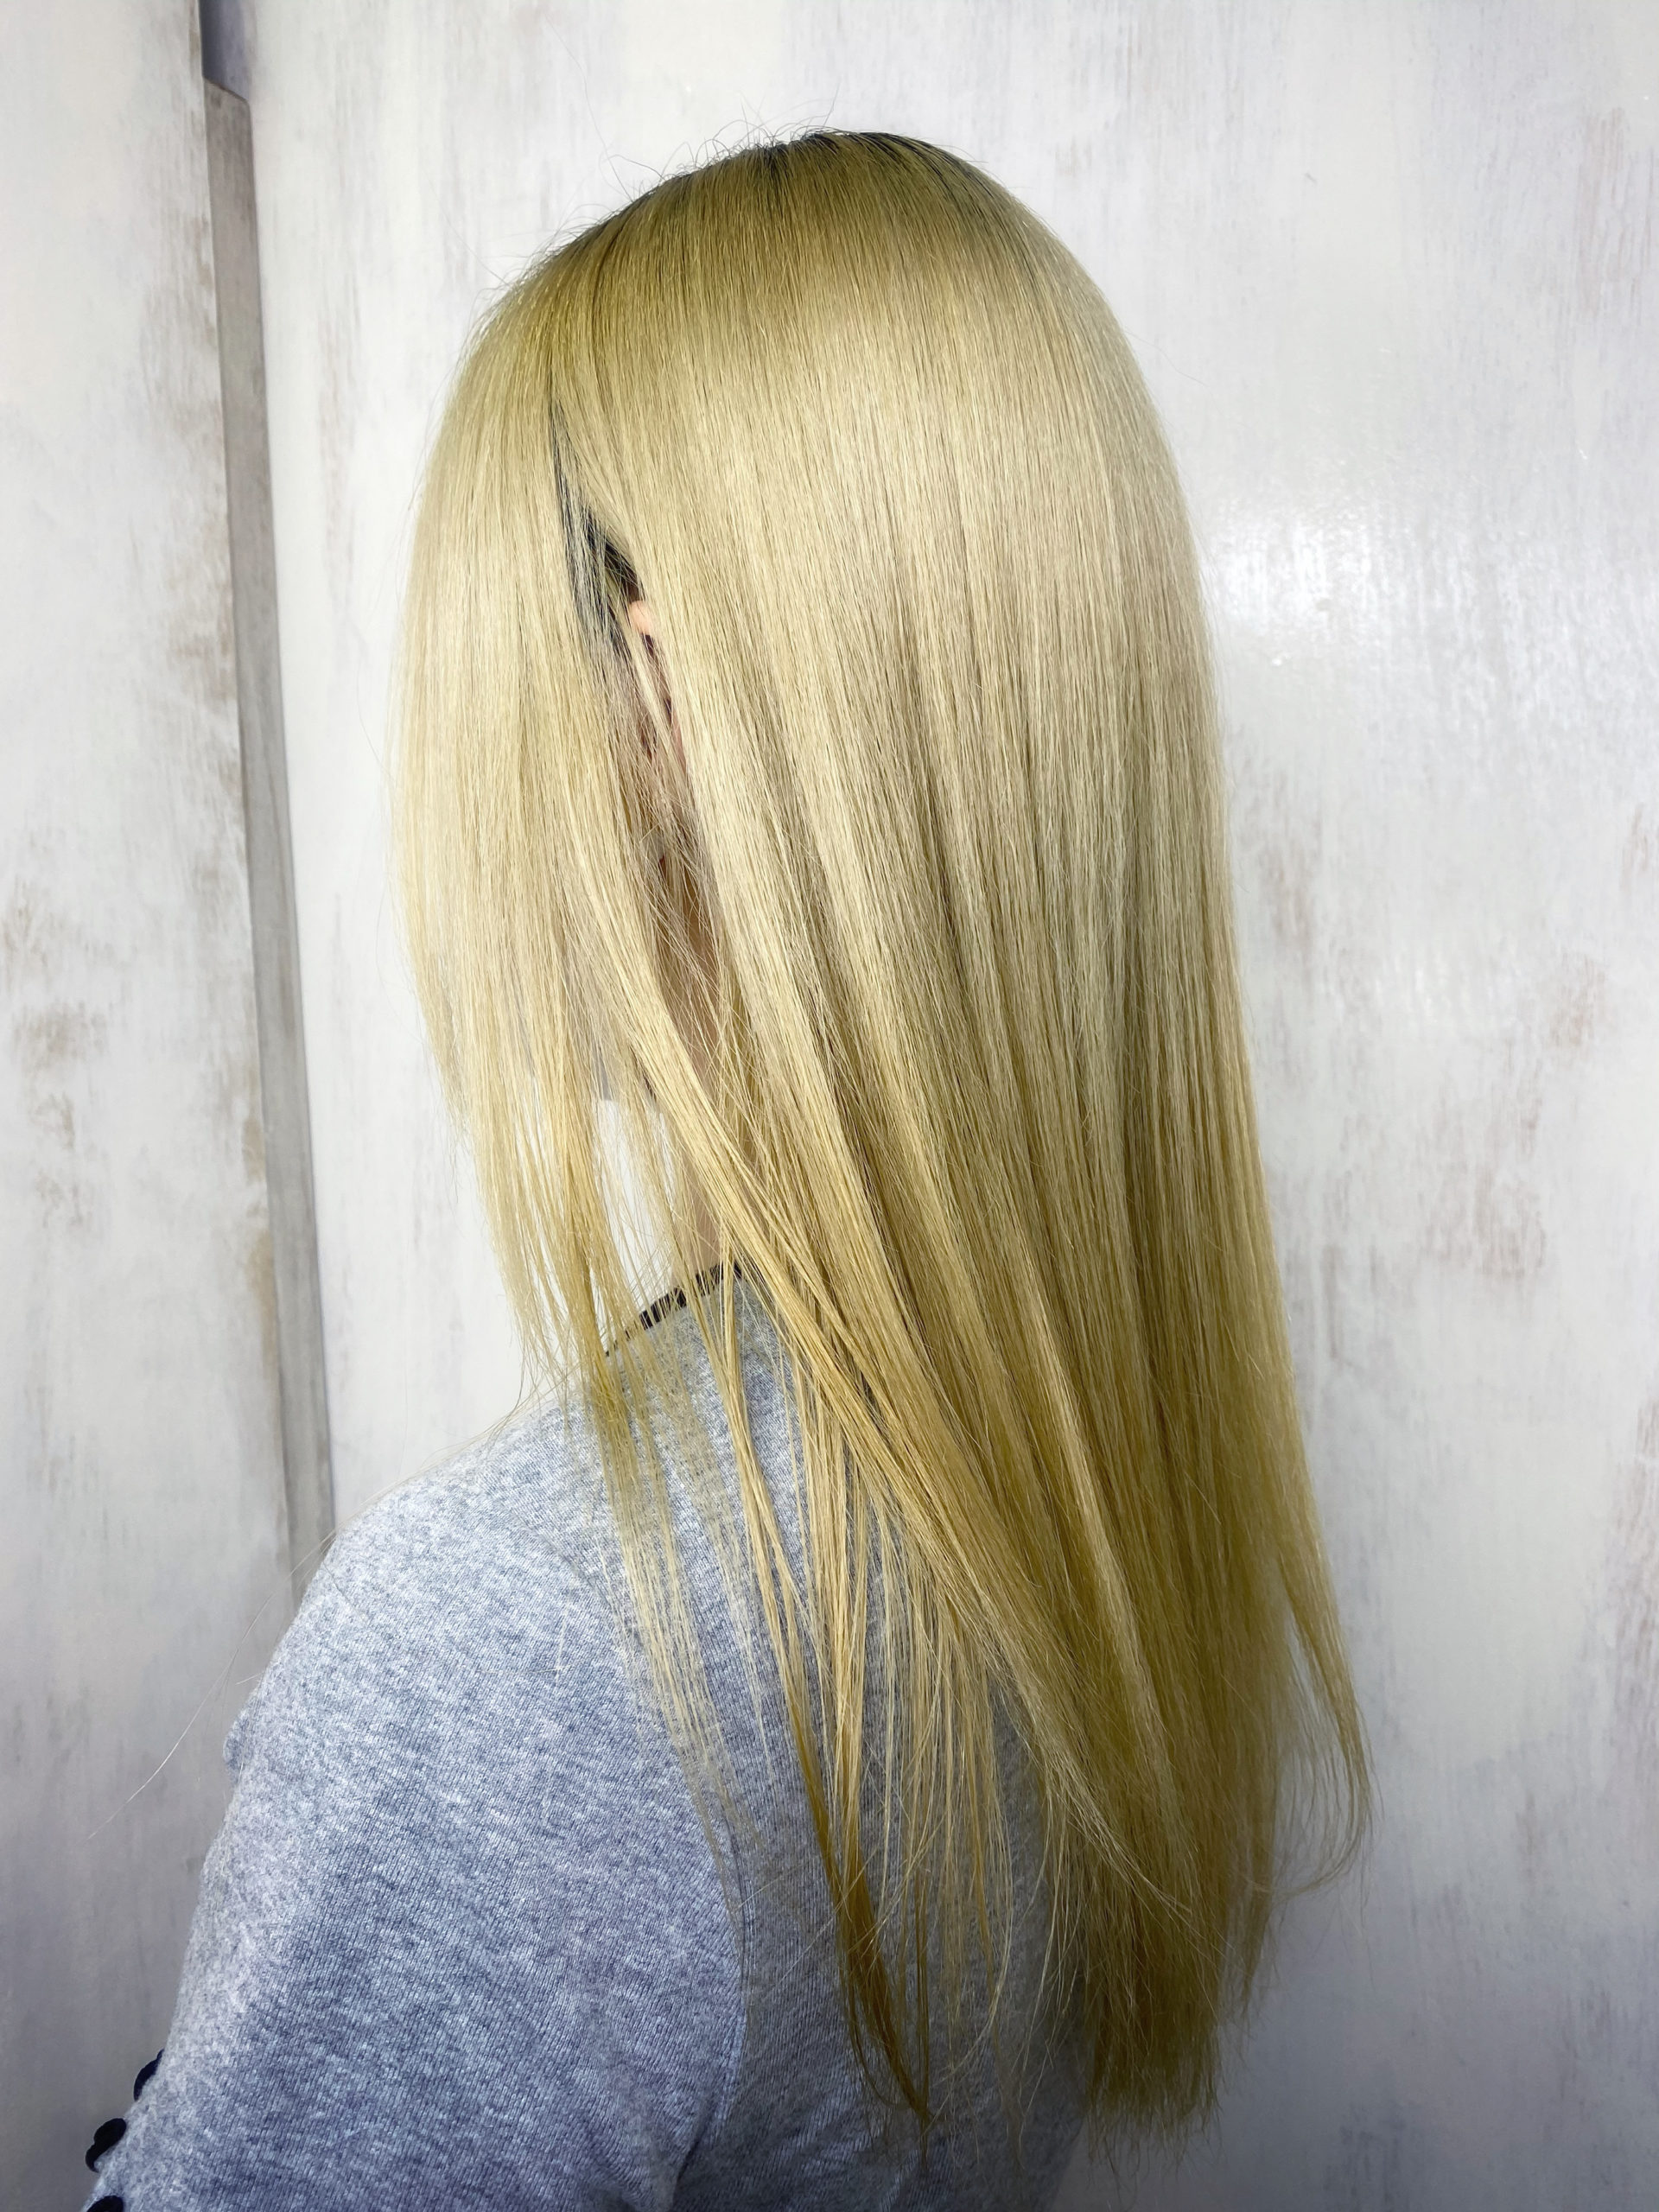 ブリーチ毛の方をビビリ矯正でつやっつやの艶髪ストレートヘア。原宿・表参道『髪のお悩みを解決するヘアケア美容師の挑戦』